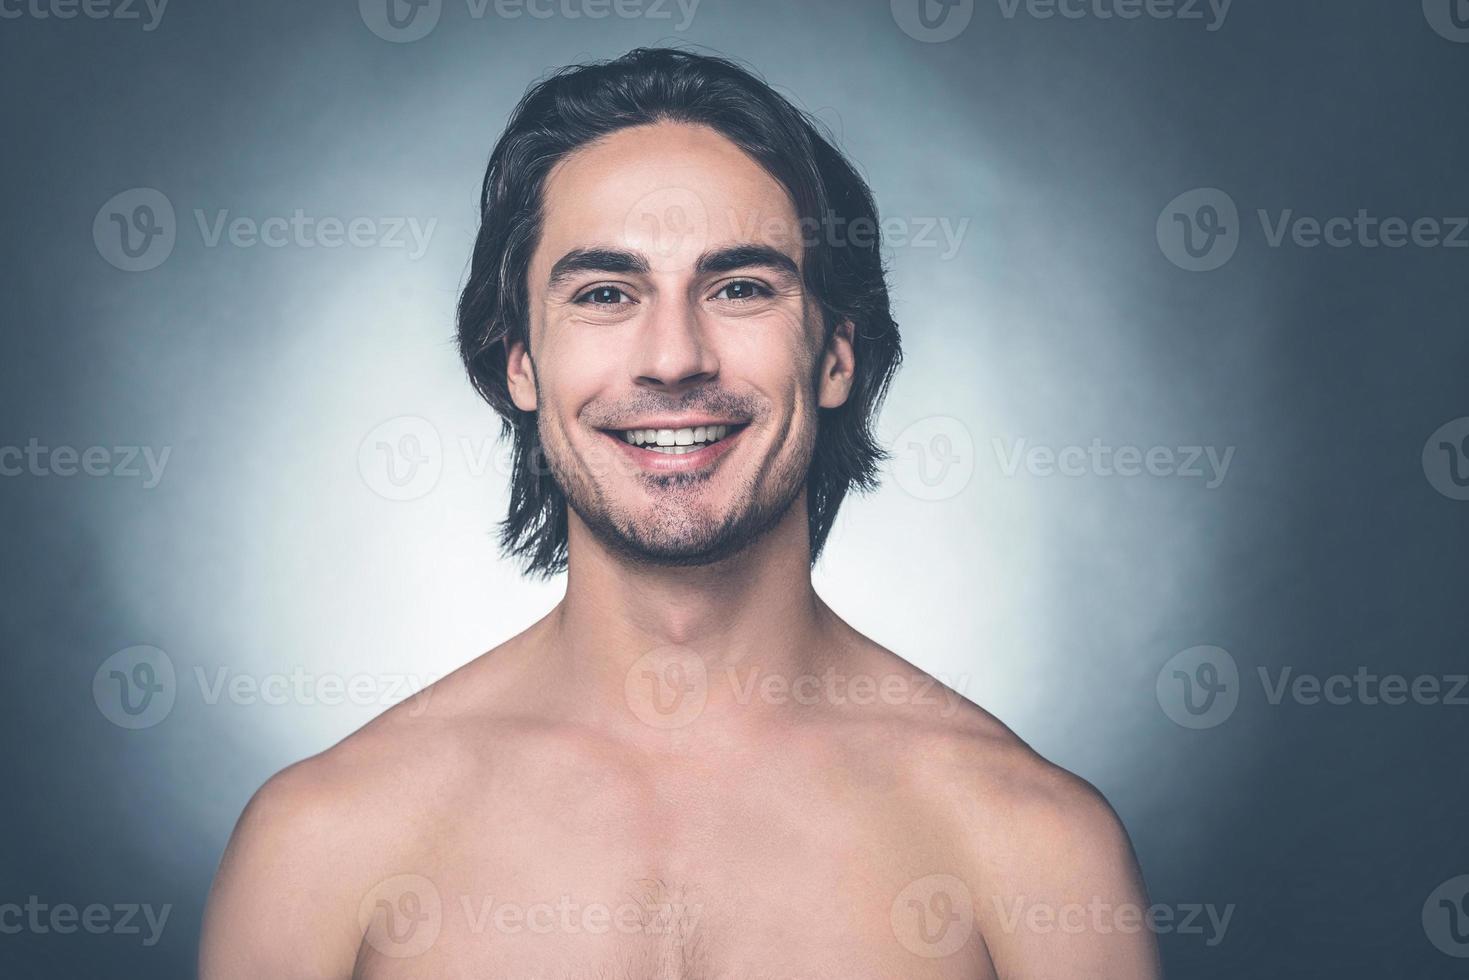 verse bien y sentirse bien. retrato de un joven sin camisa mirando a la cámara y sonriendo mientras se enfrenta a un fondo gris foto